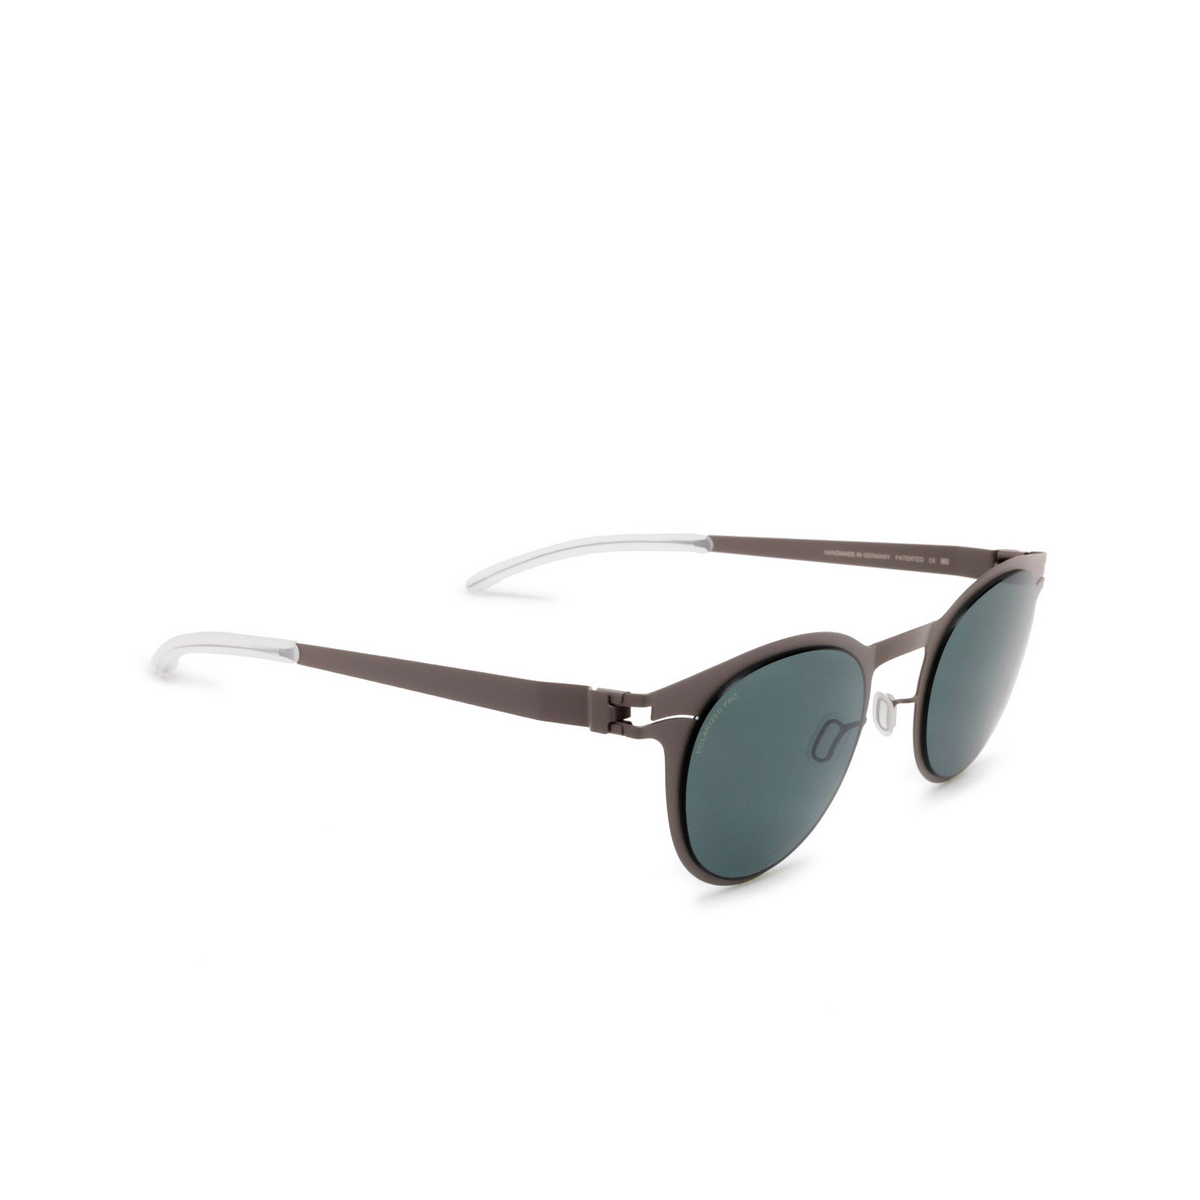 Mykita® Square Sunglasses: Riley color 223 Mole Grey - three-quarters view